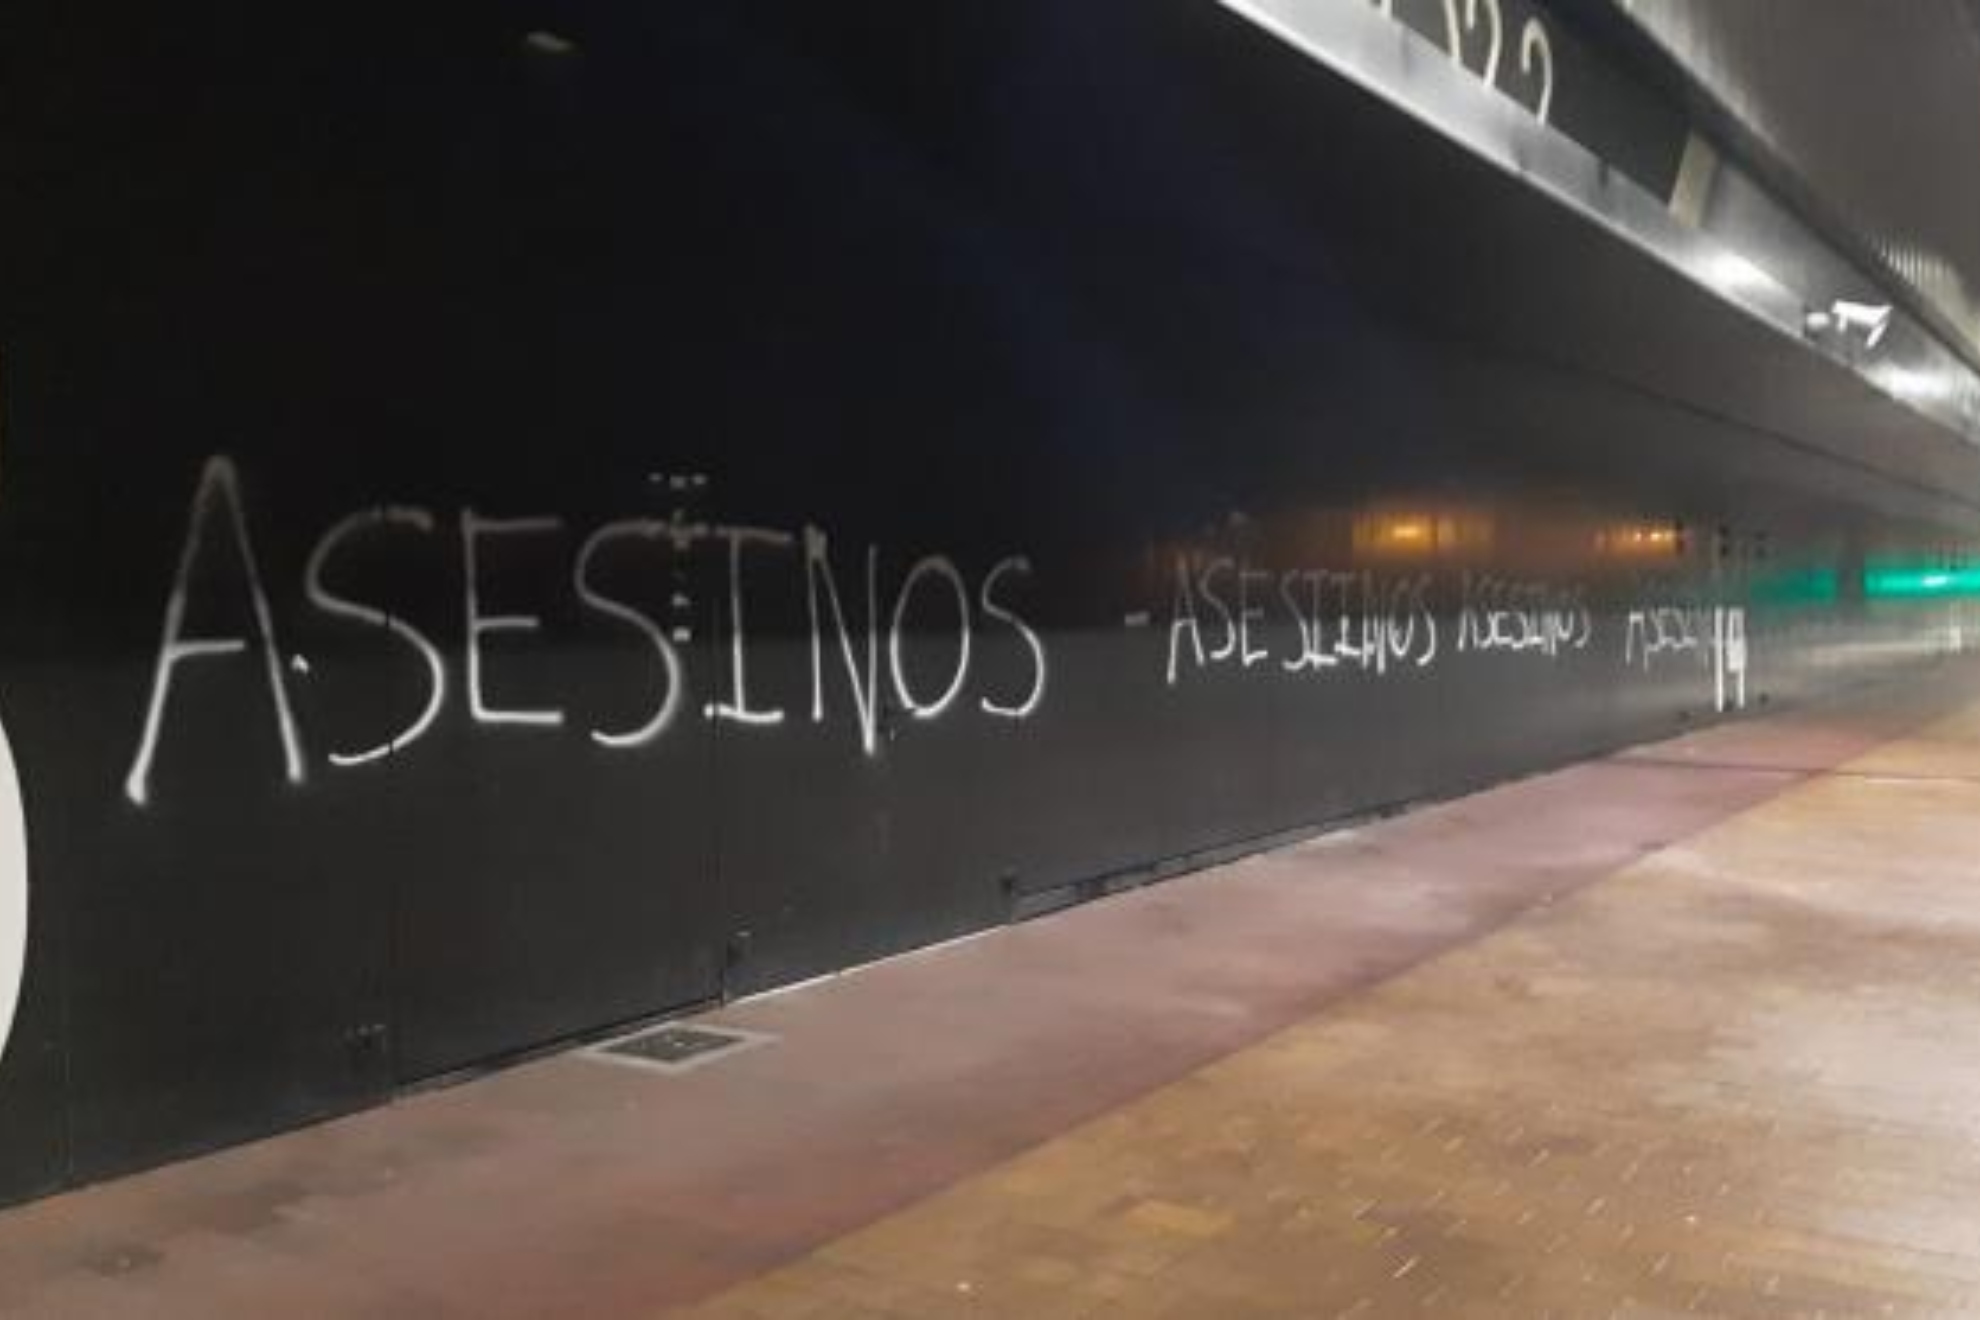 Aparecen pintadas de Asesinos en el estadio del Burgos CF, que condena la violencia